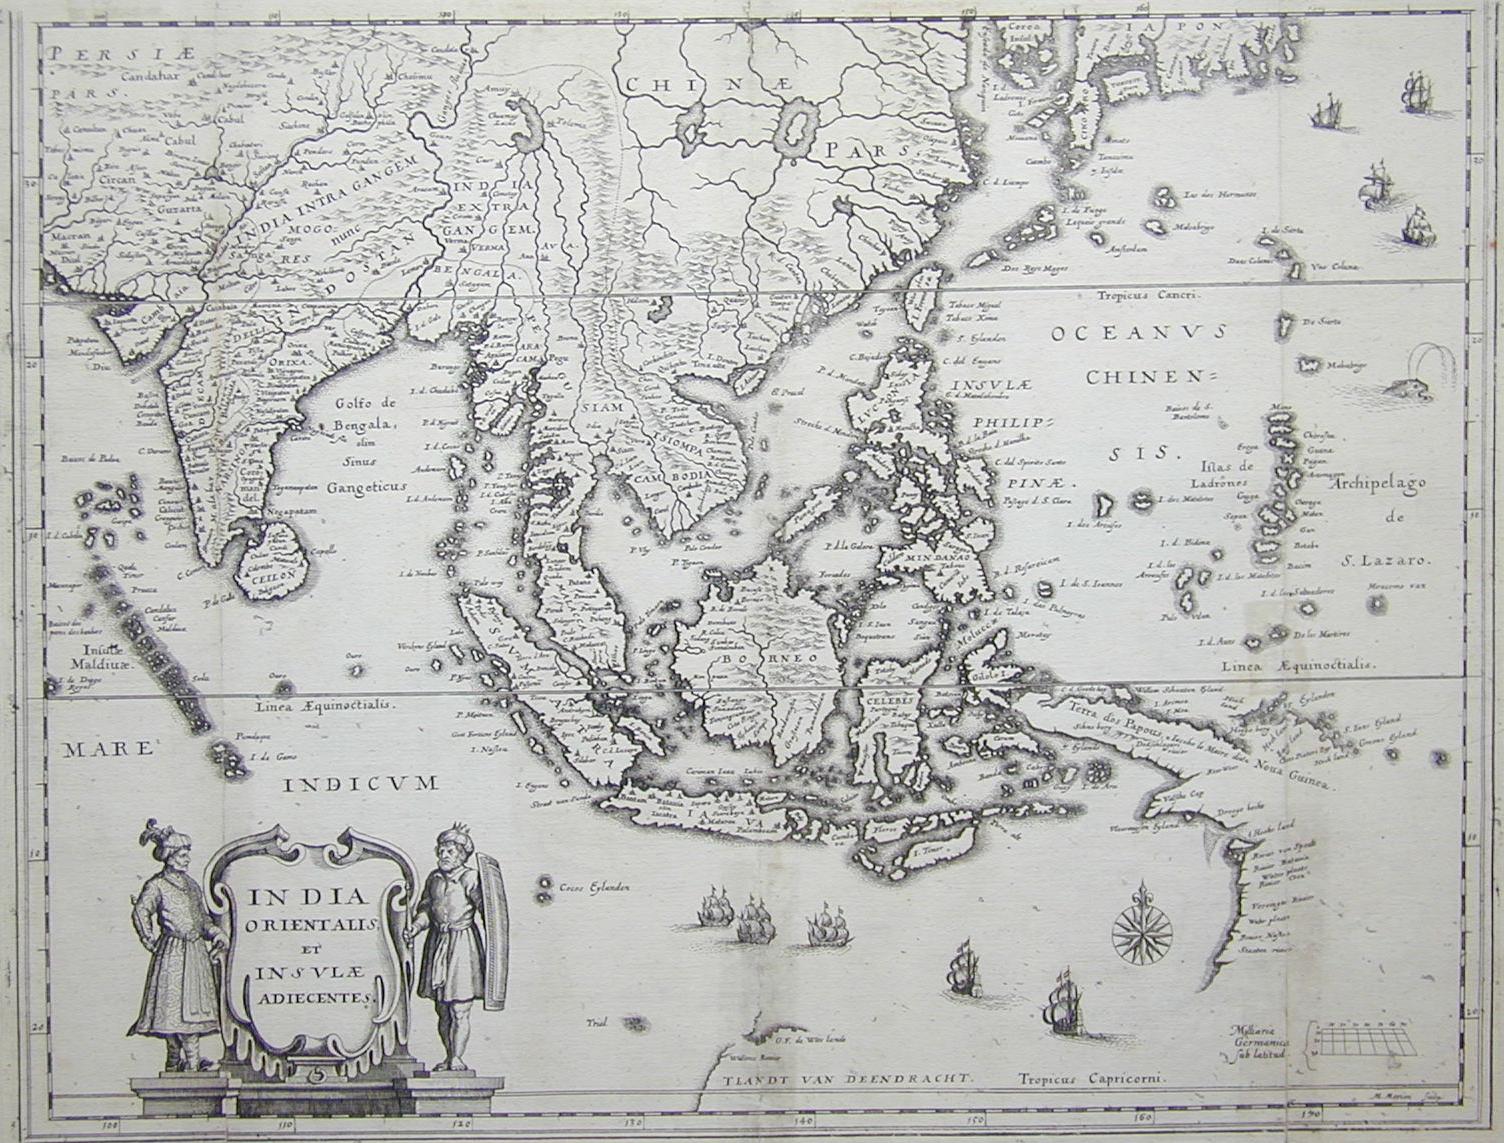 India Orientale e Isole 1700